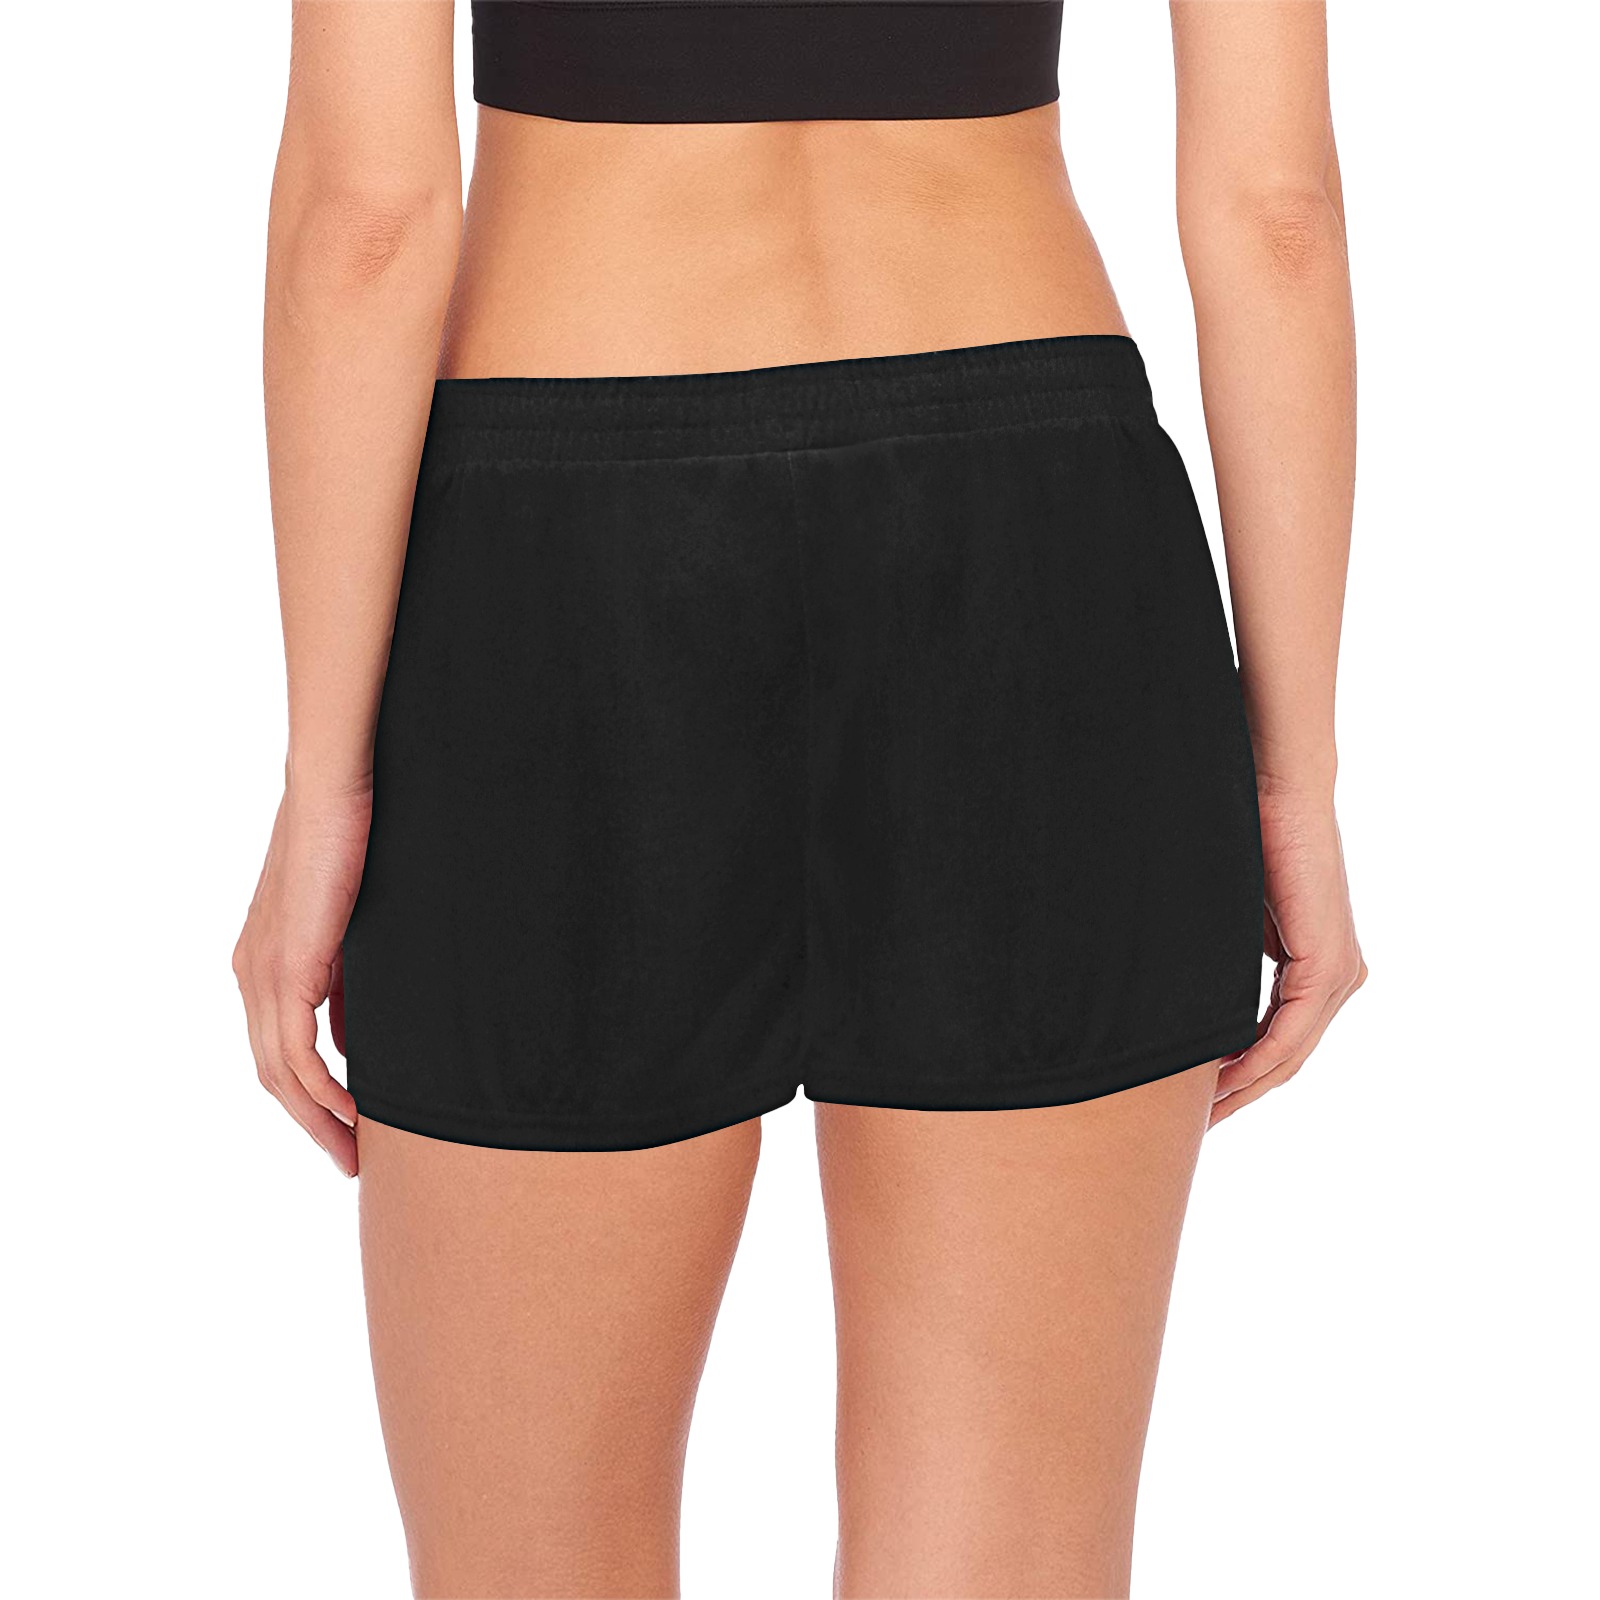 Shorts black with single logo Women's Pajama Shorts